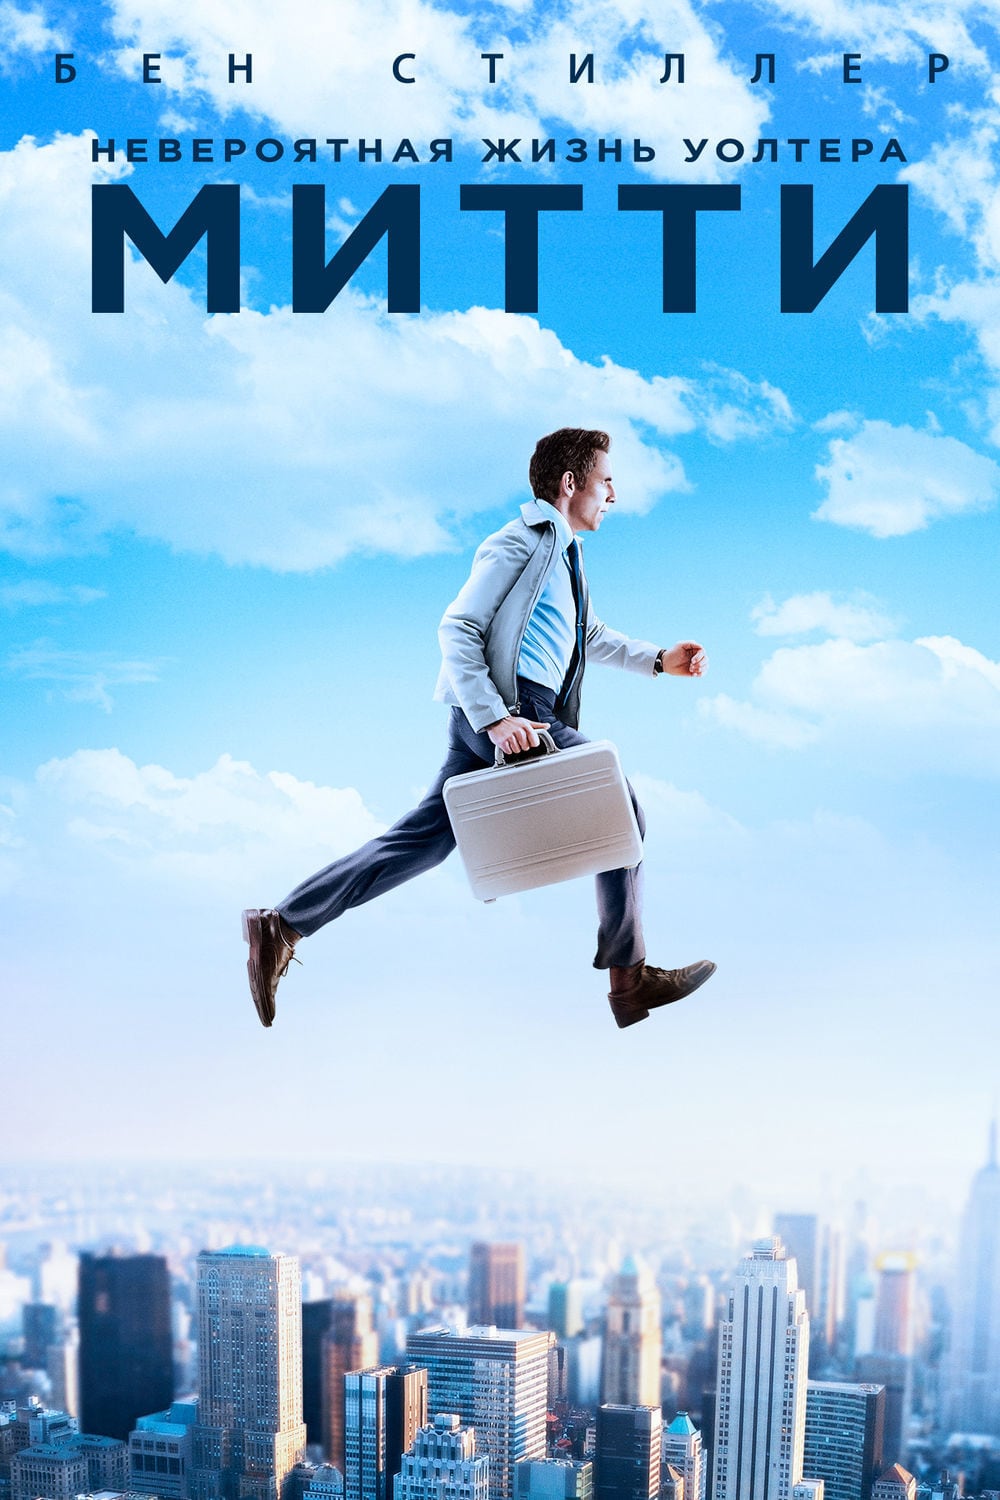 Постер 'Невероятная жизнь Уолтера Митти (2013)'